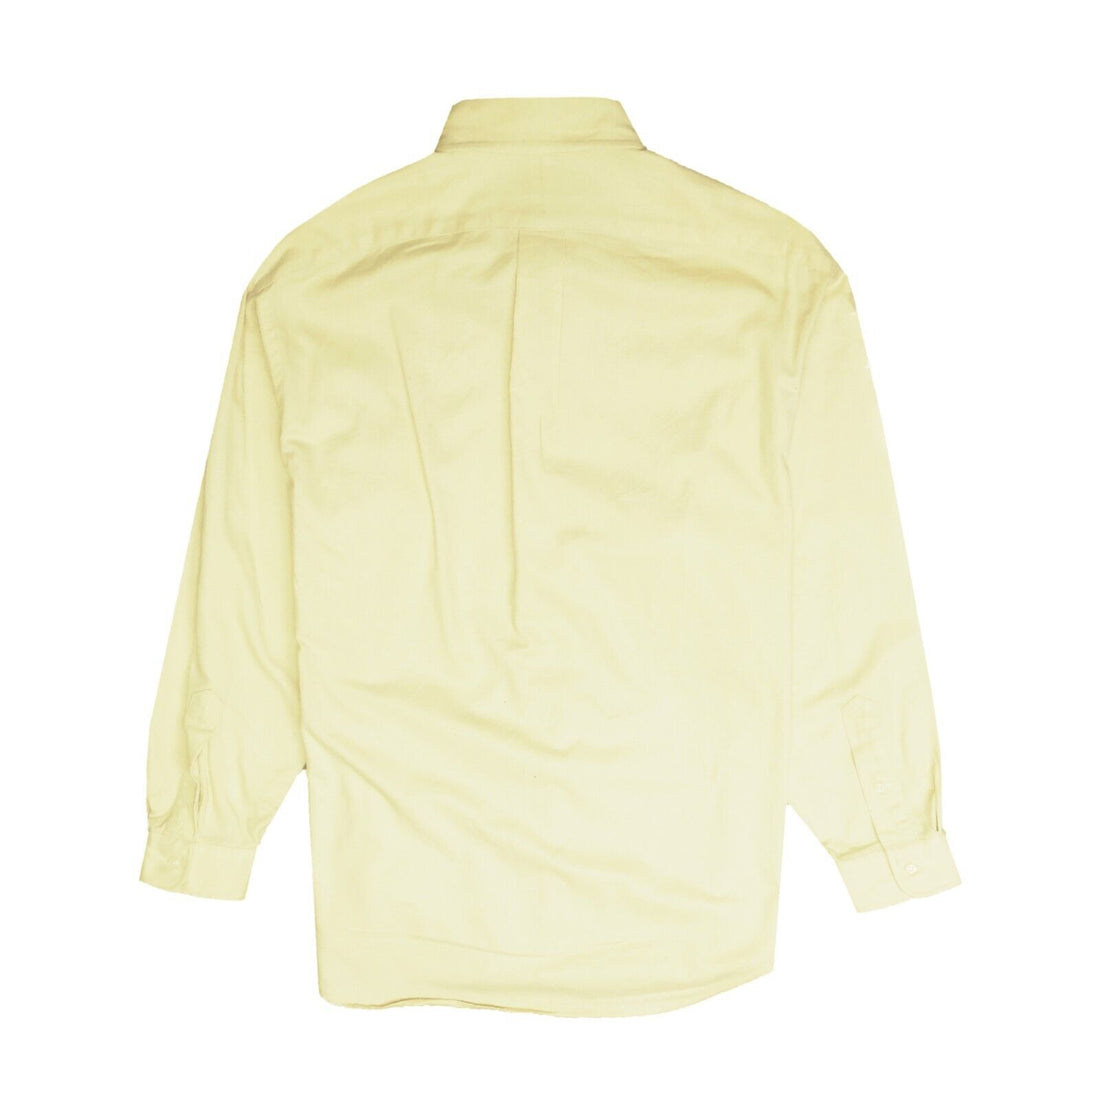 Vintage Polo Ralph Lauren Tilden Button Up Dress Shirt Size Medium 90s Yellow